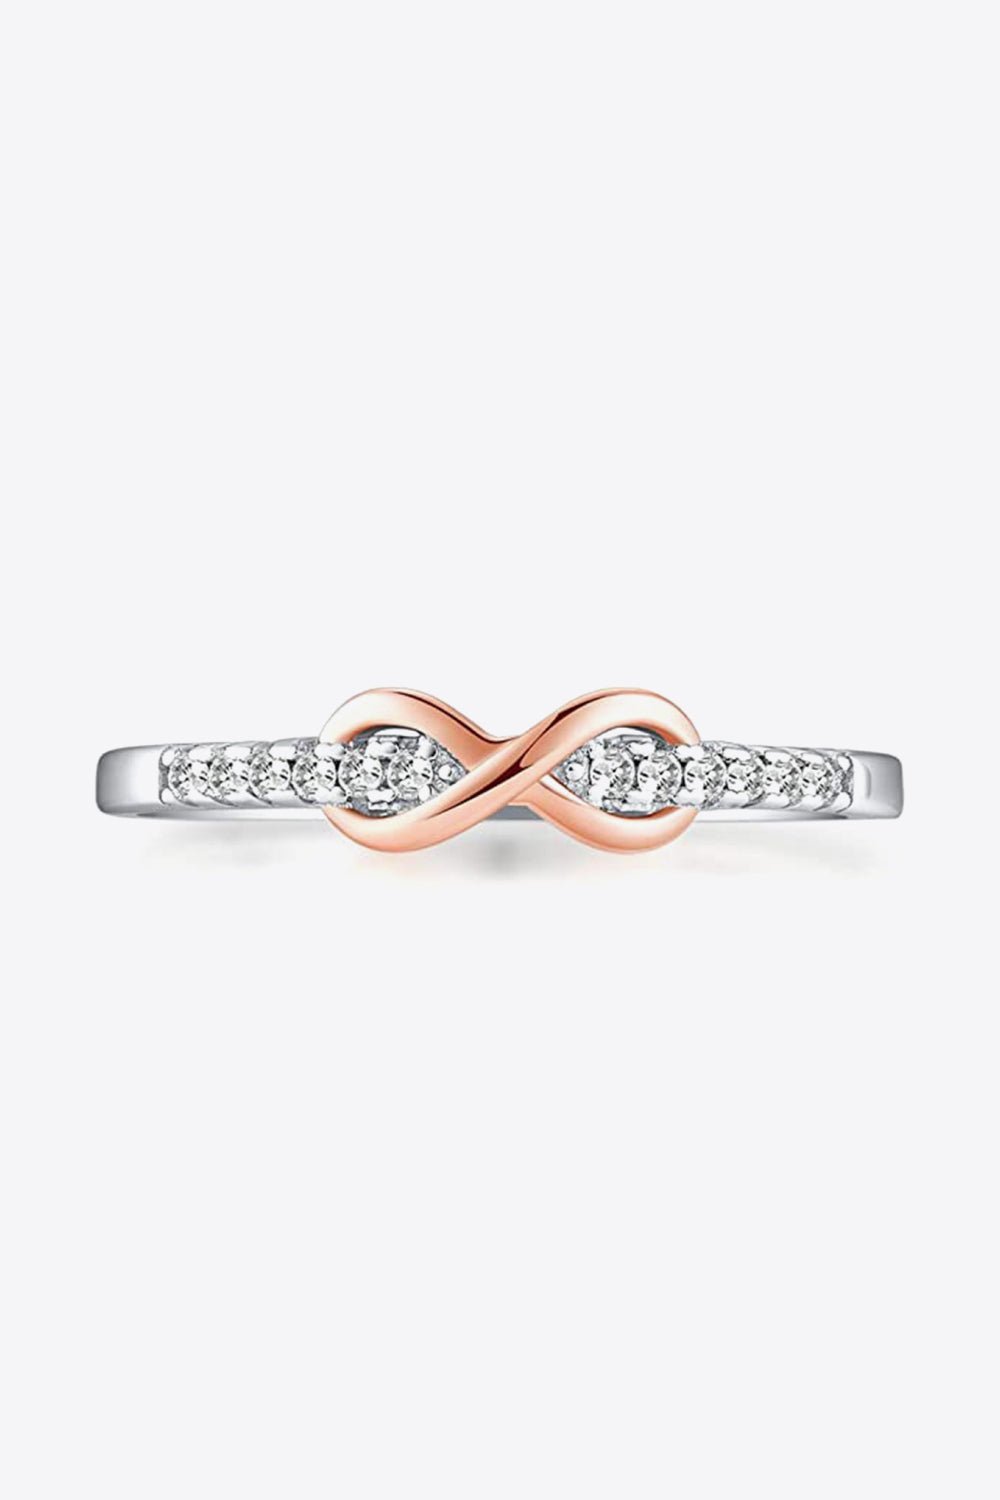 Infinity Sterling Silver Ring - Tangerine Goddess